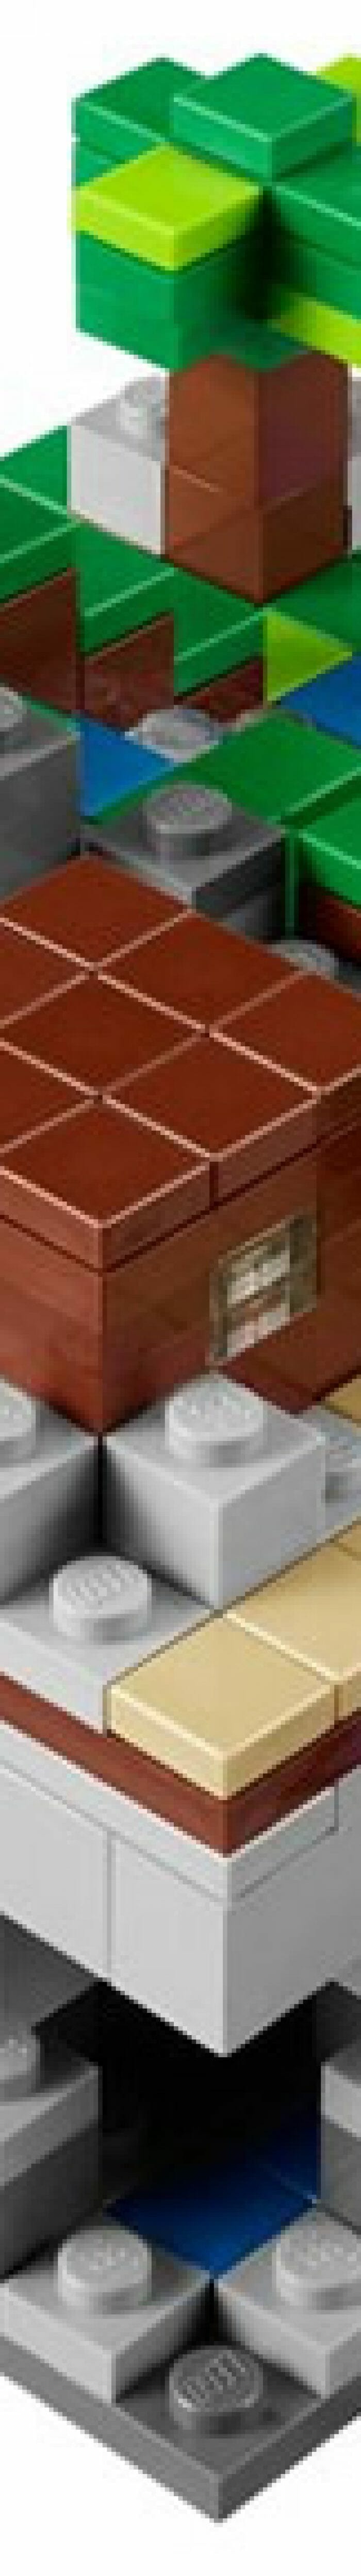 LEGO Minecraft foi oficialmente lançado e já pode ser encomendado!